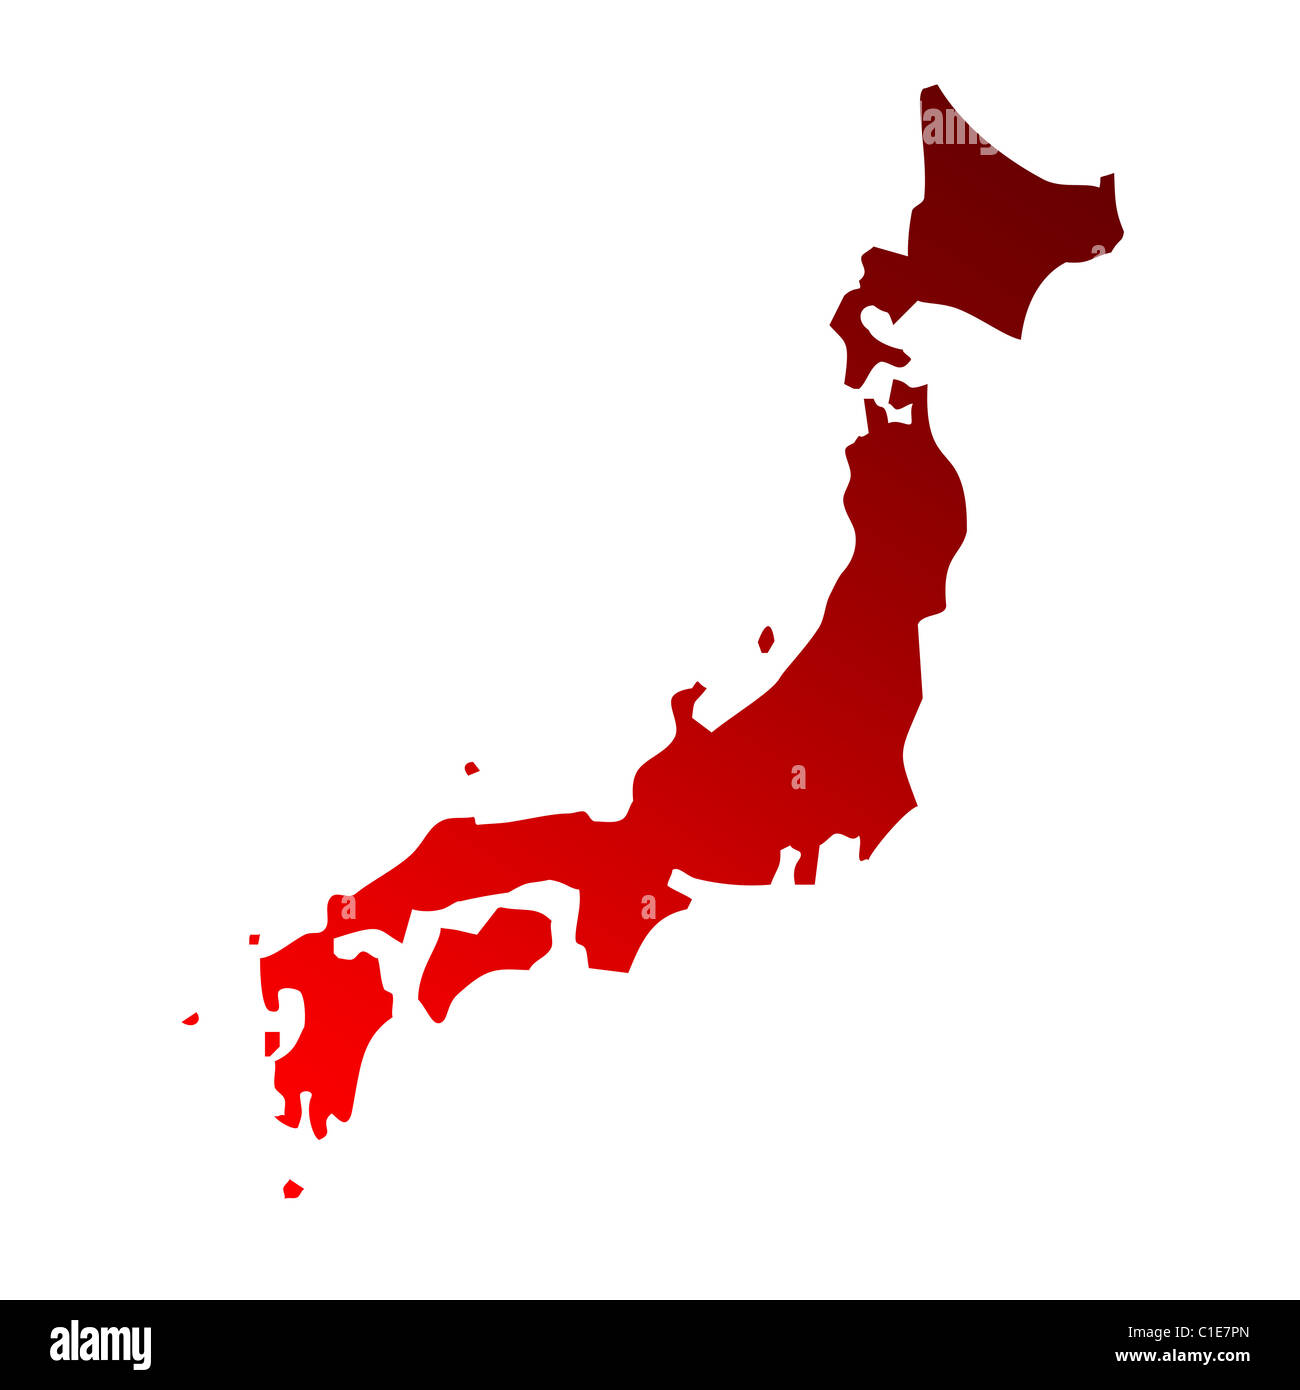 Illustrierte Karte von Japan; isoliert auf weißem Hintergrund. Stockfoto